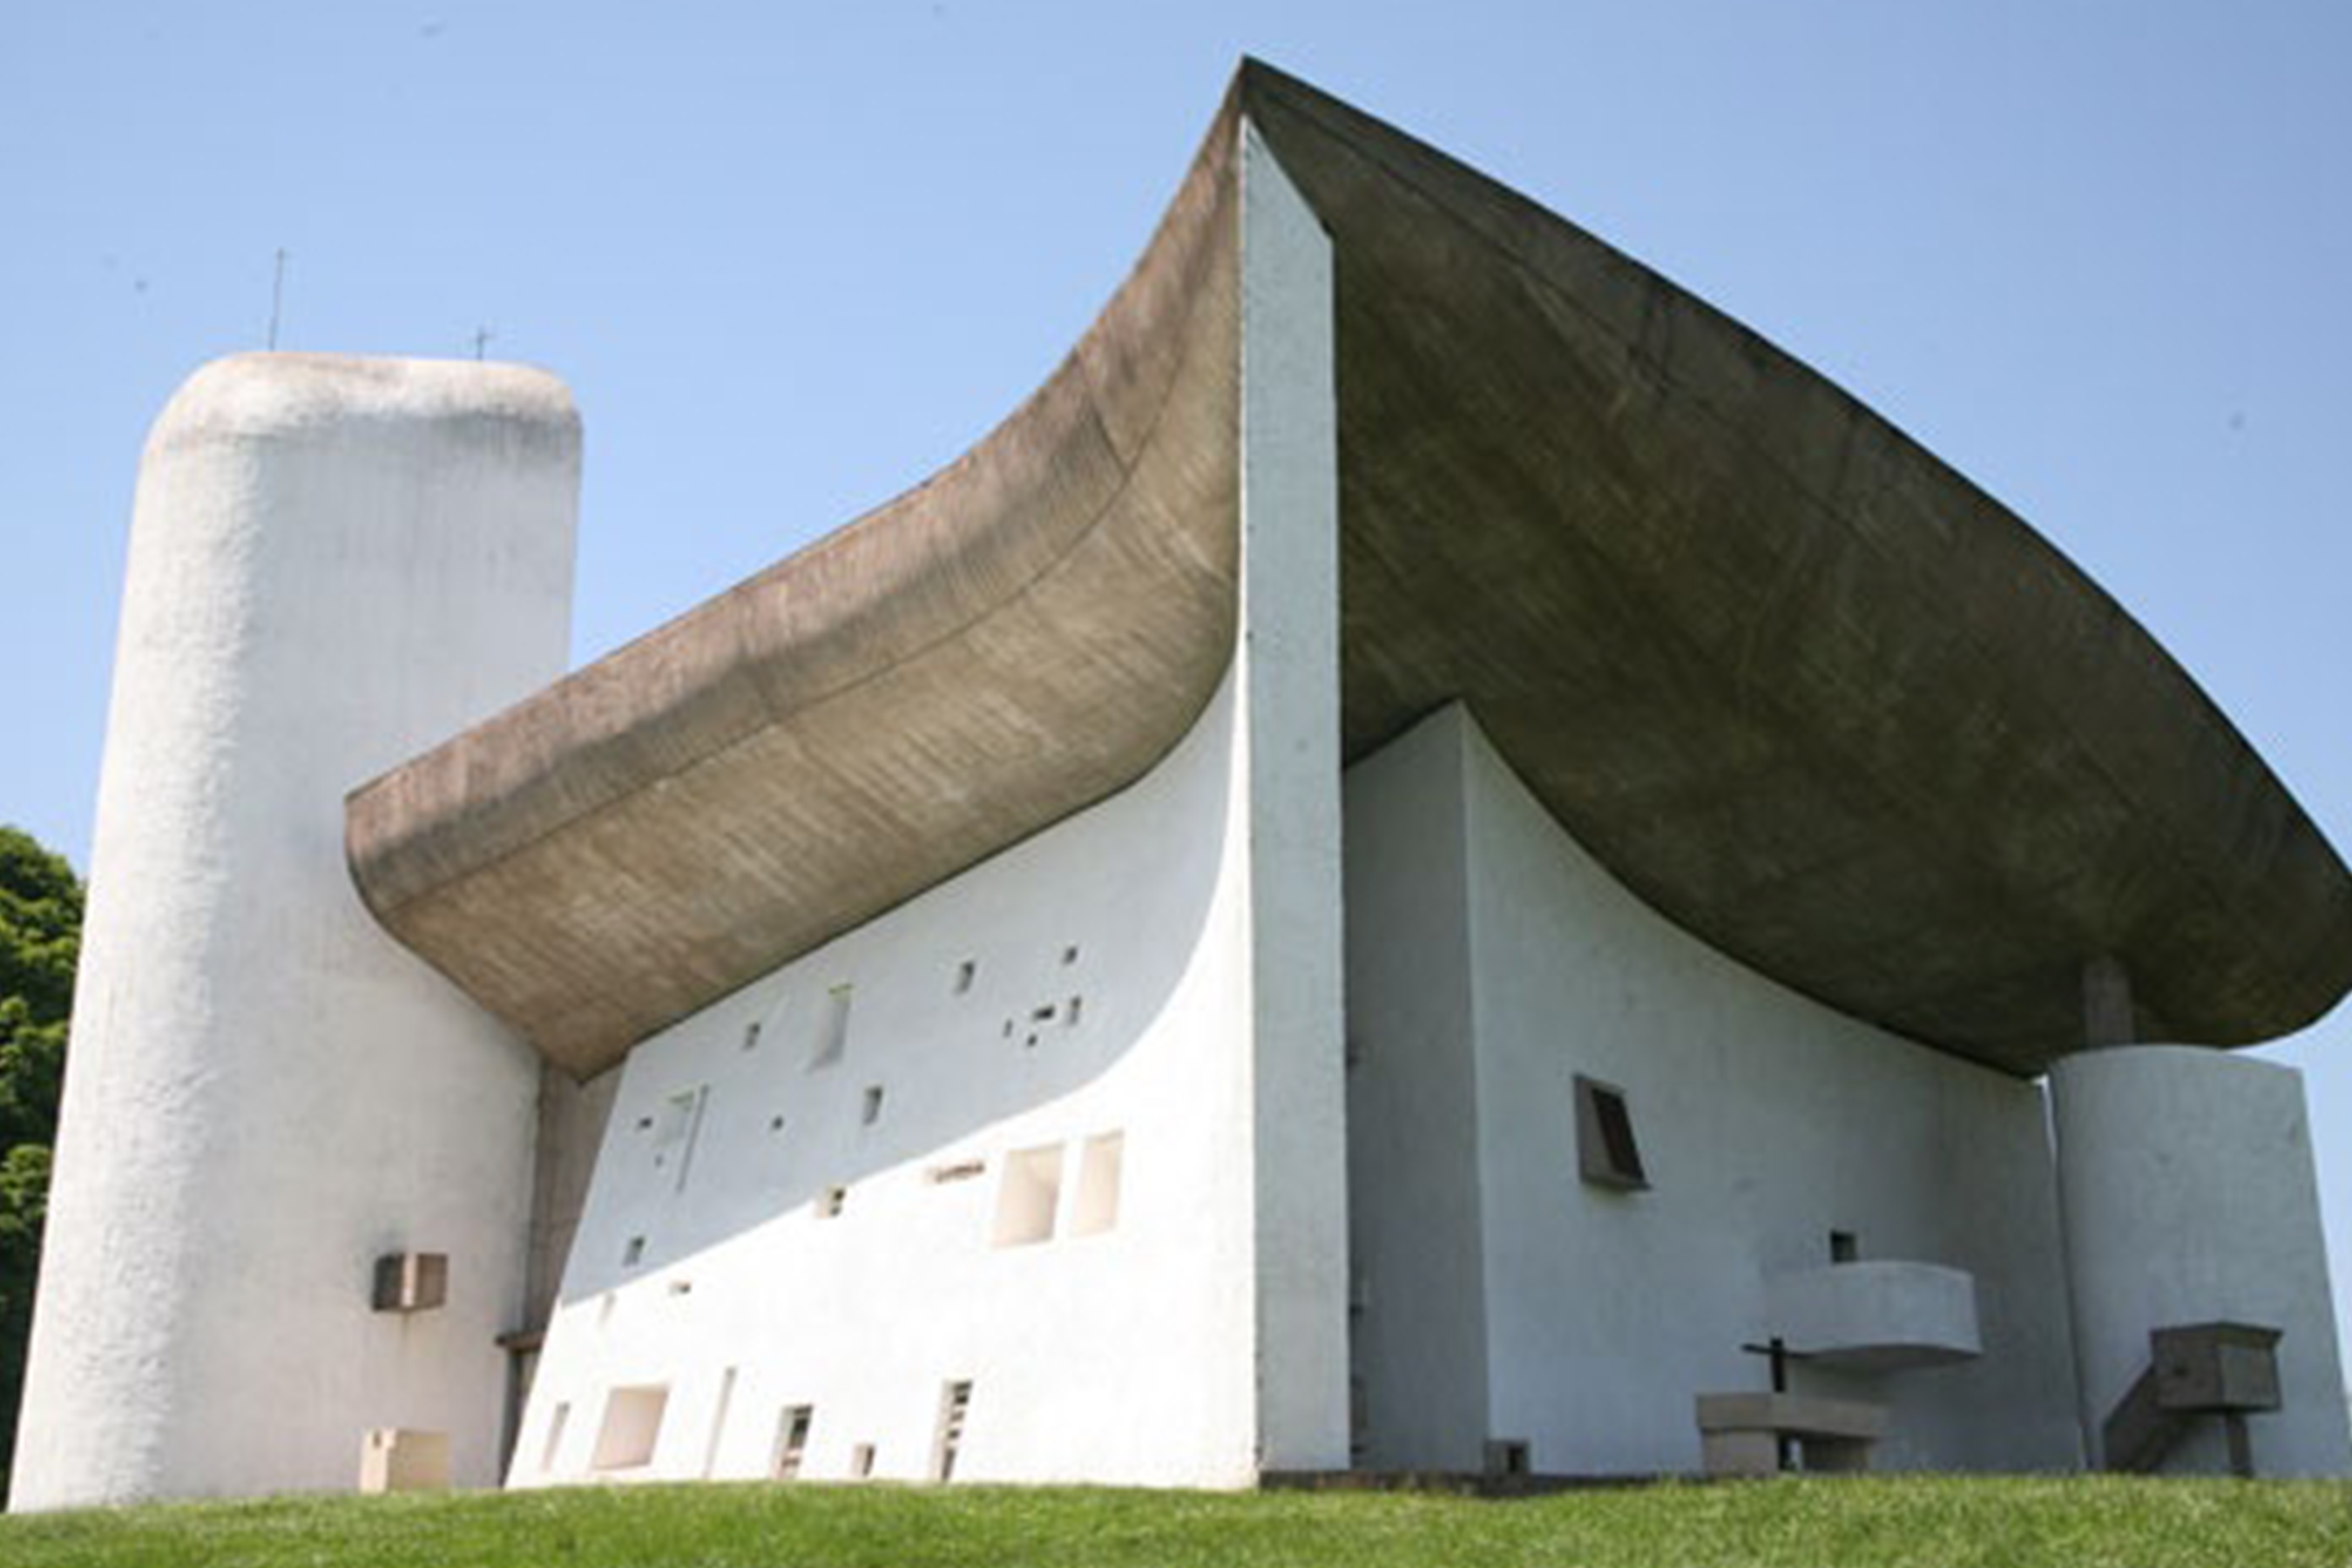 Le Corbusier's, Chapel Notre-Dame du Haut